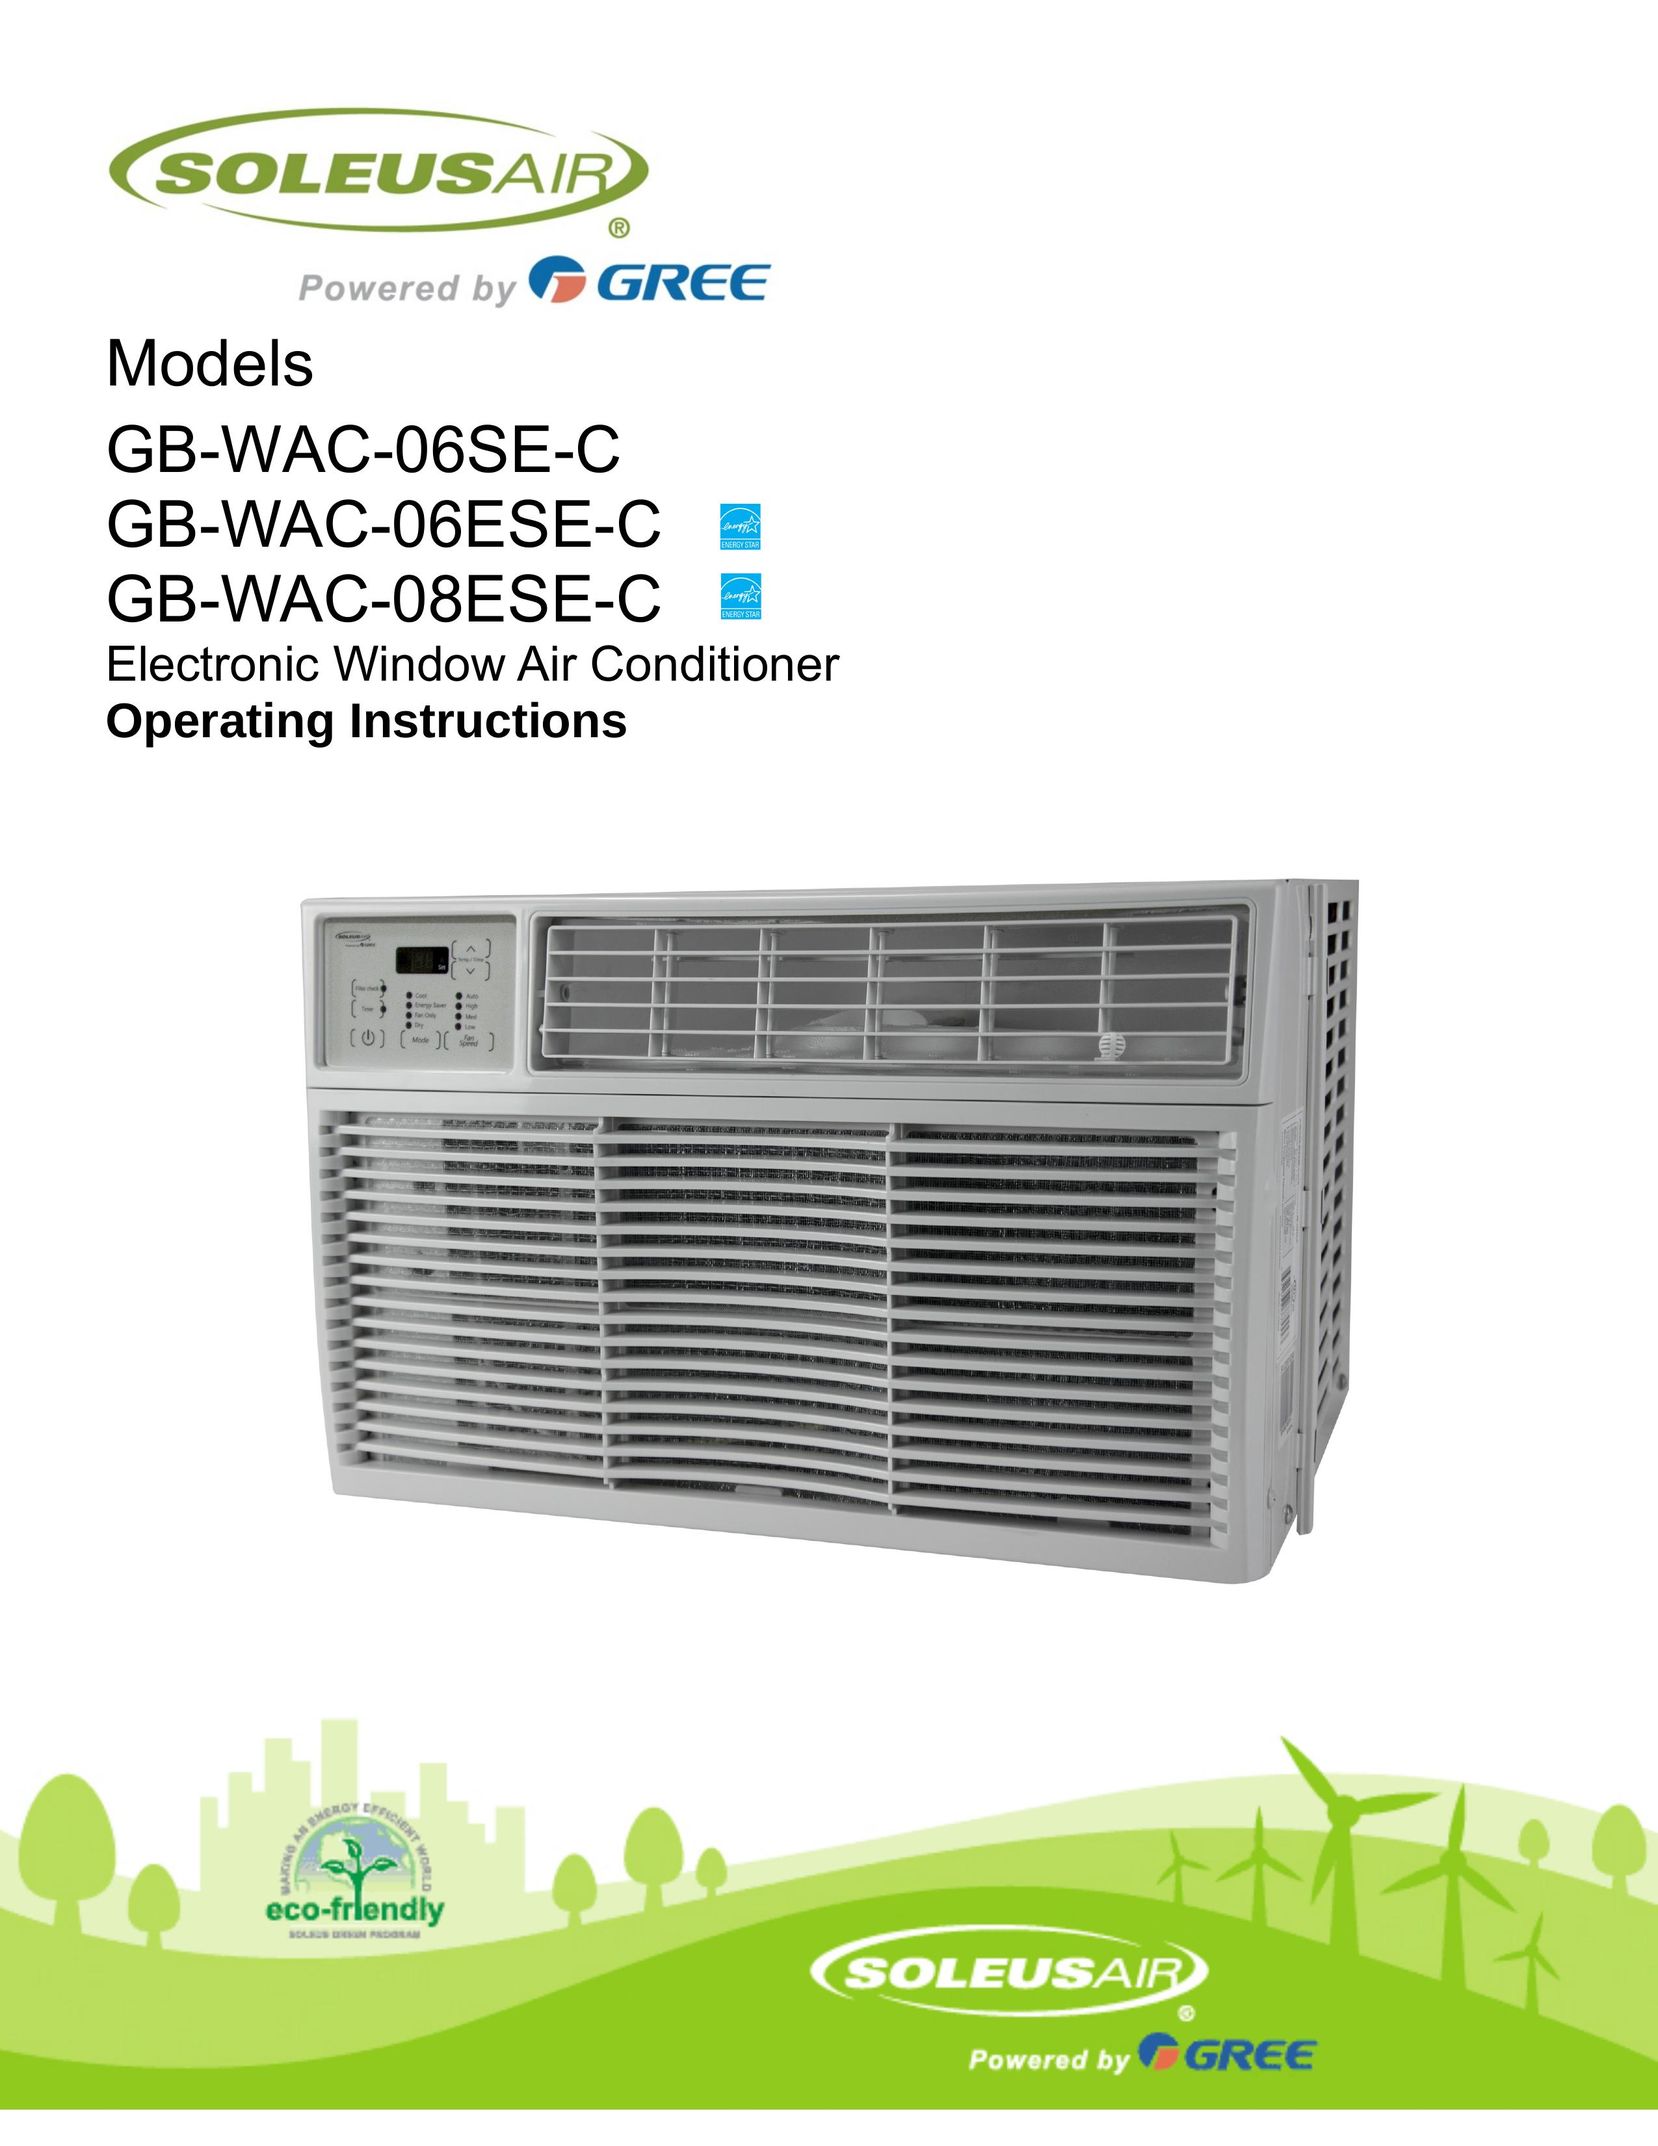 Soleus Air GB-WAC-06SE-C Air Conditioner User Manual